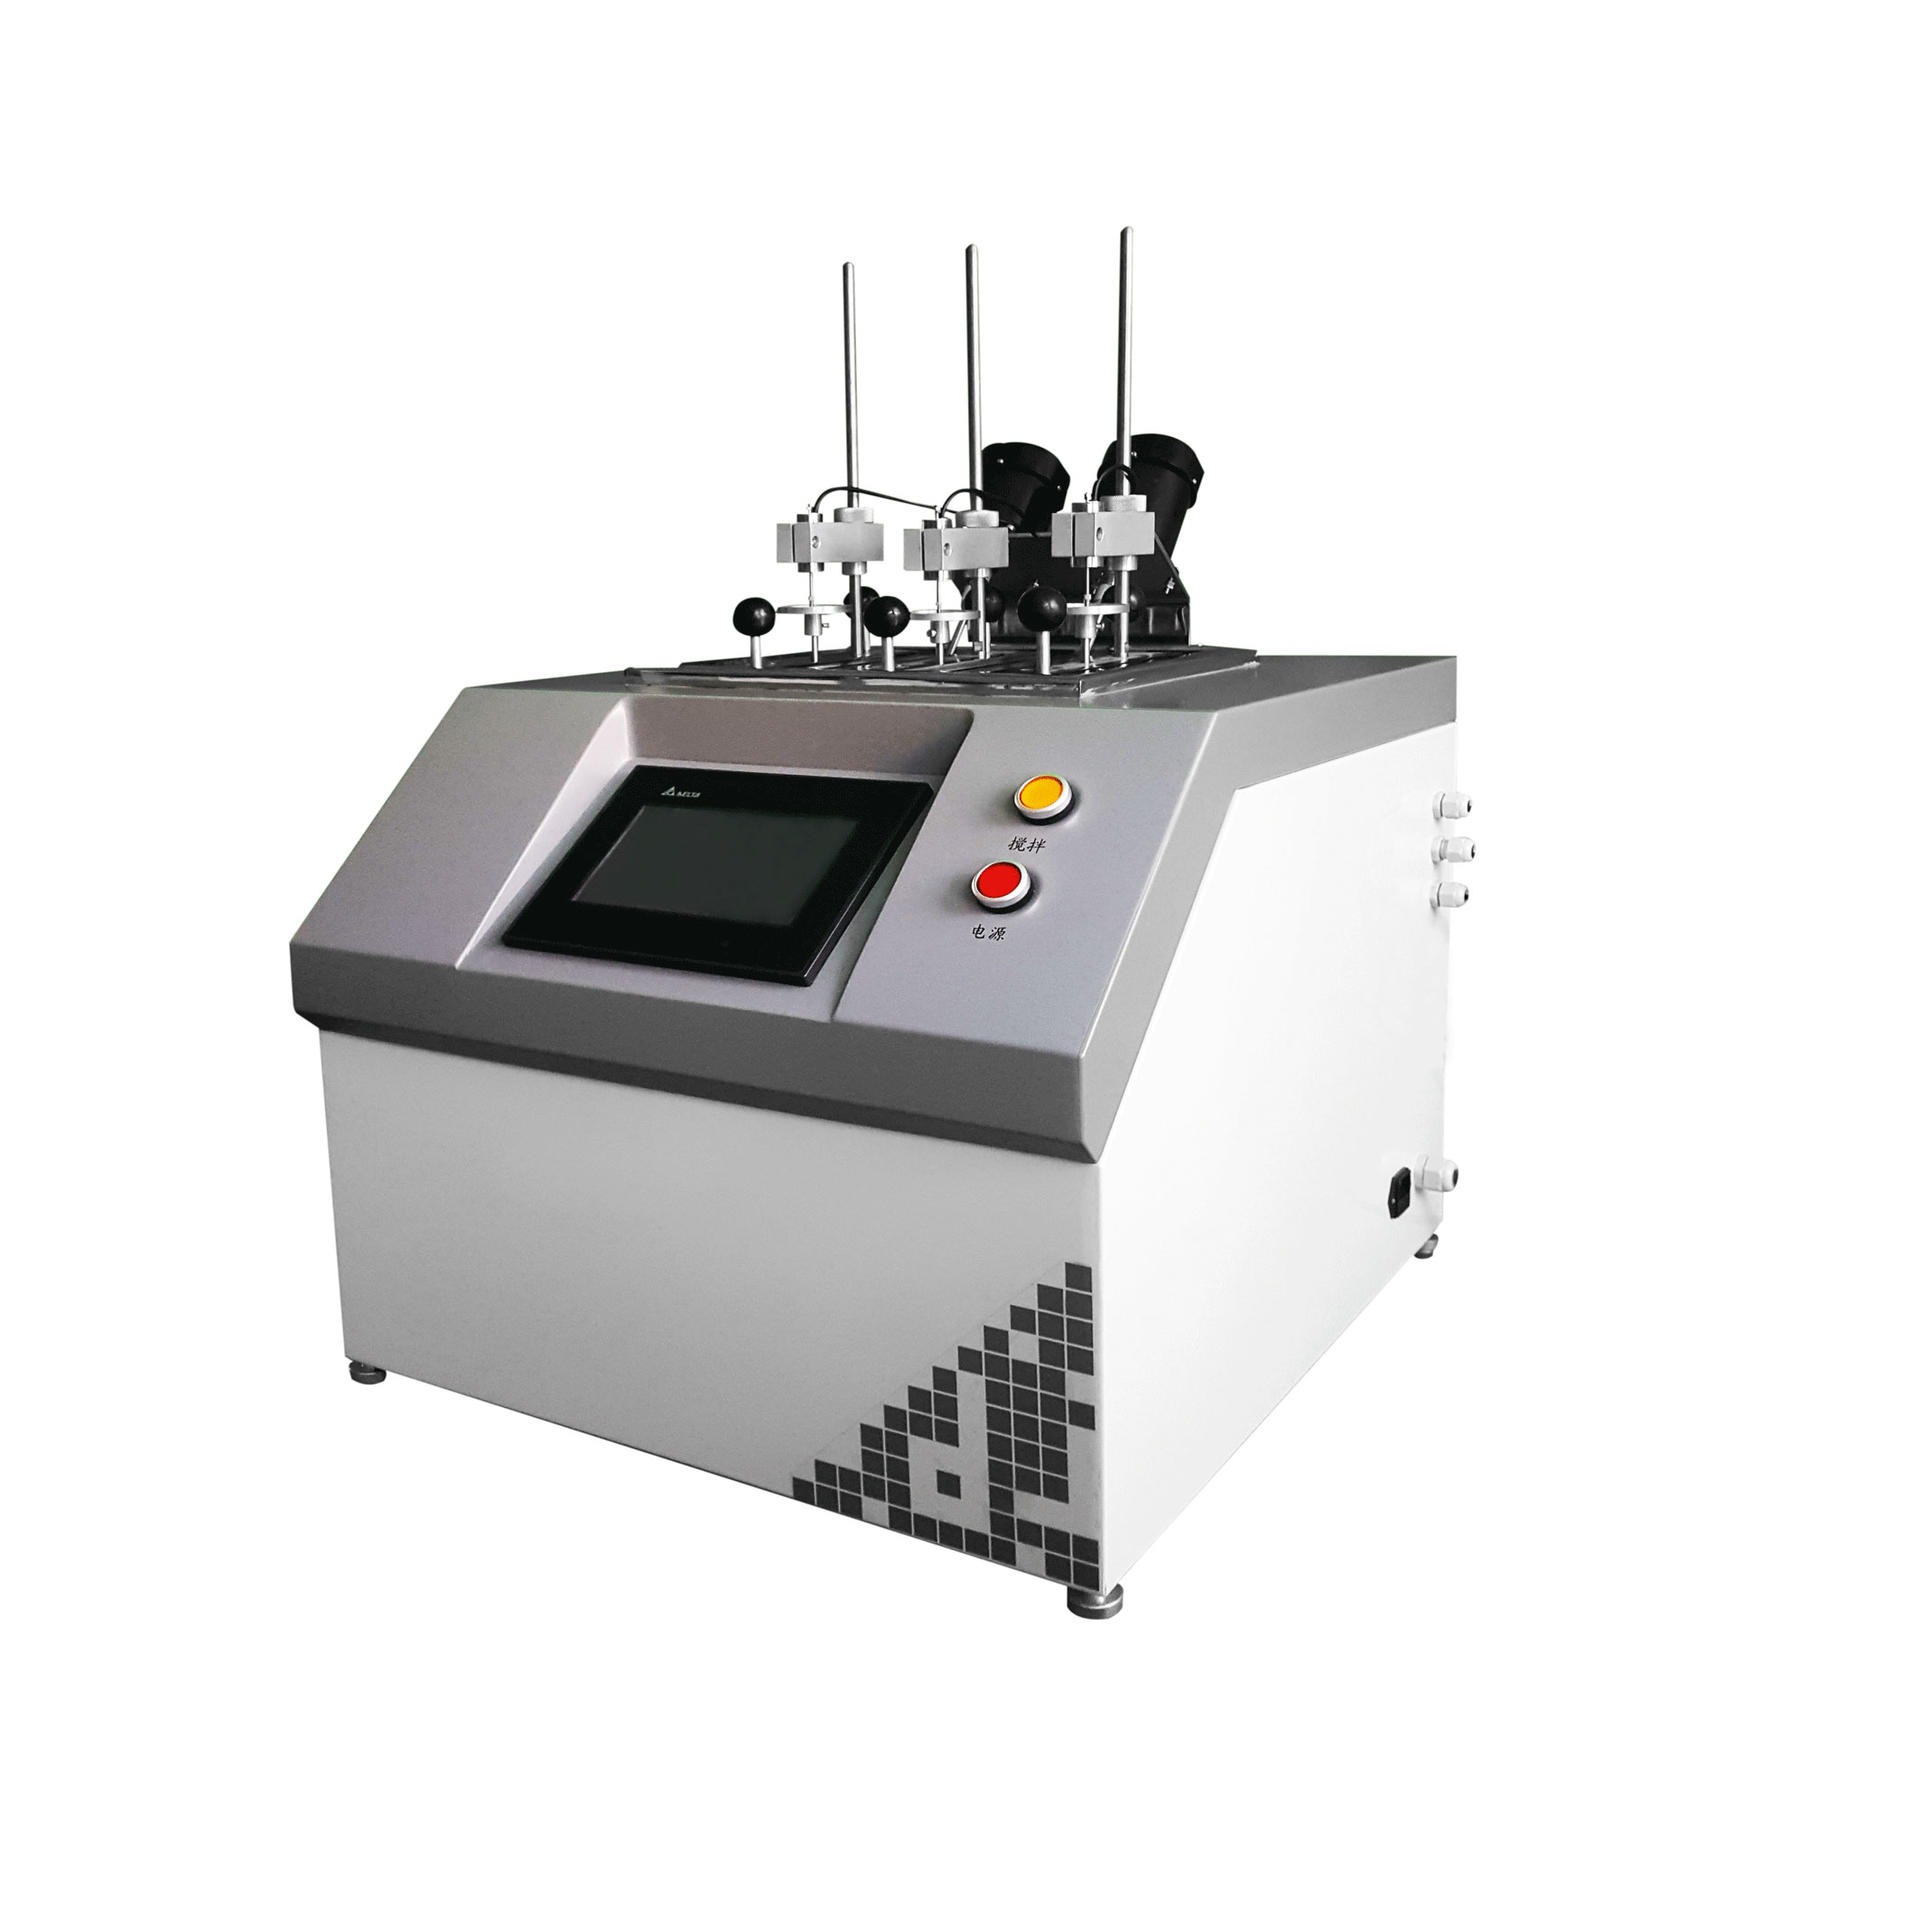 维卡软化地测定仪  XRW-300UA 大加厂家直销软化点   维卡仪  热变形仪  热变形温度测定仪